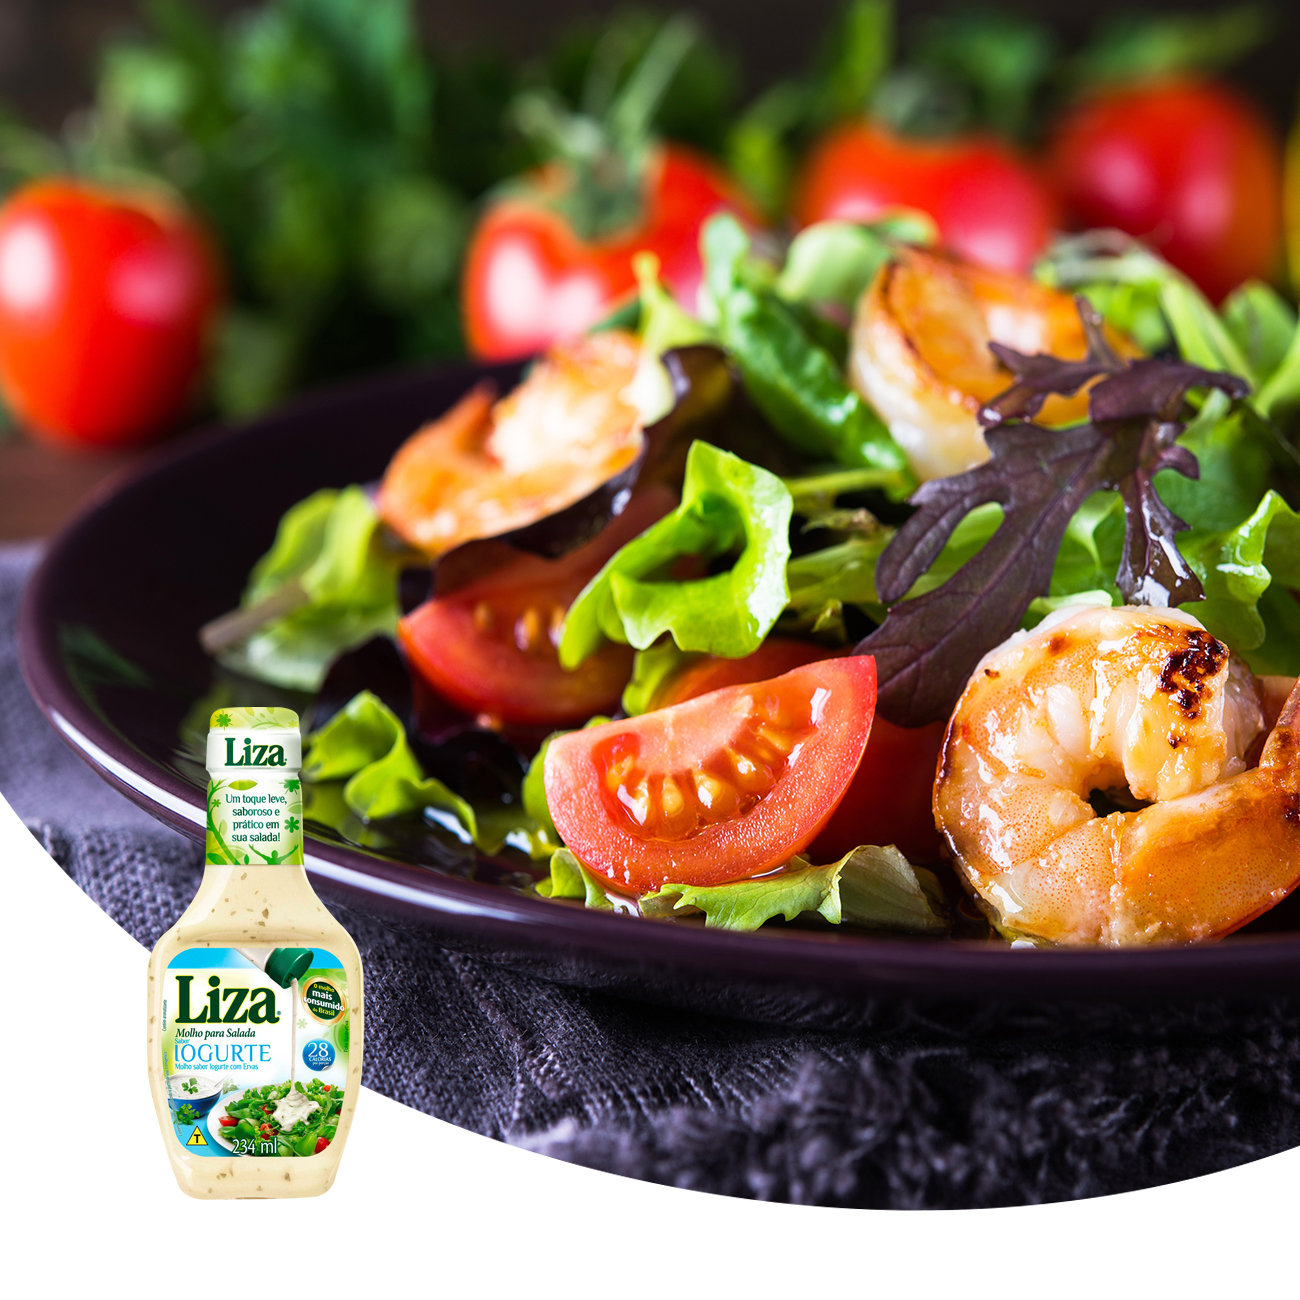 Molho para Salada Liza Iogurte 234ml | Caixa com 2 Unidades